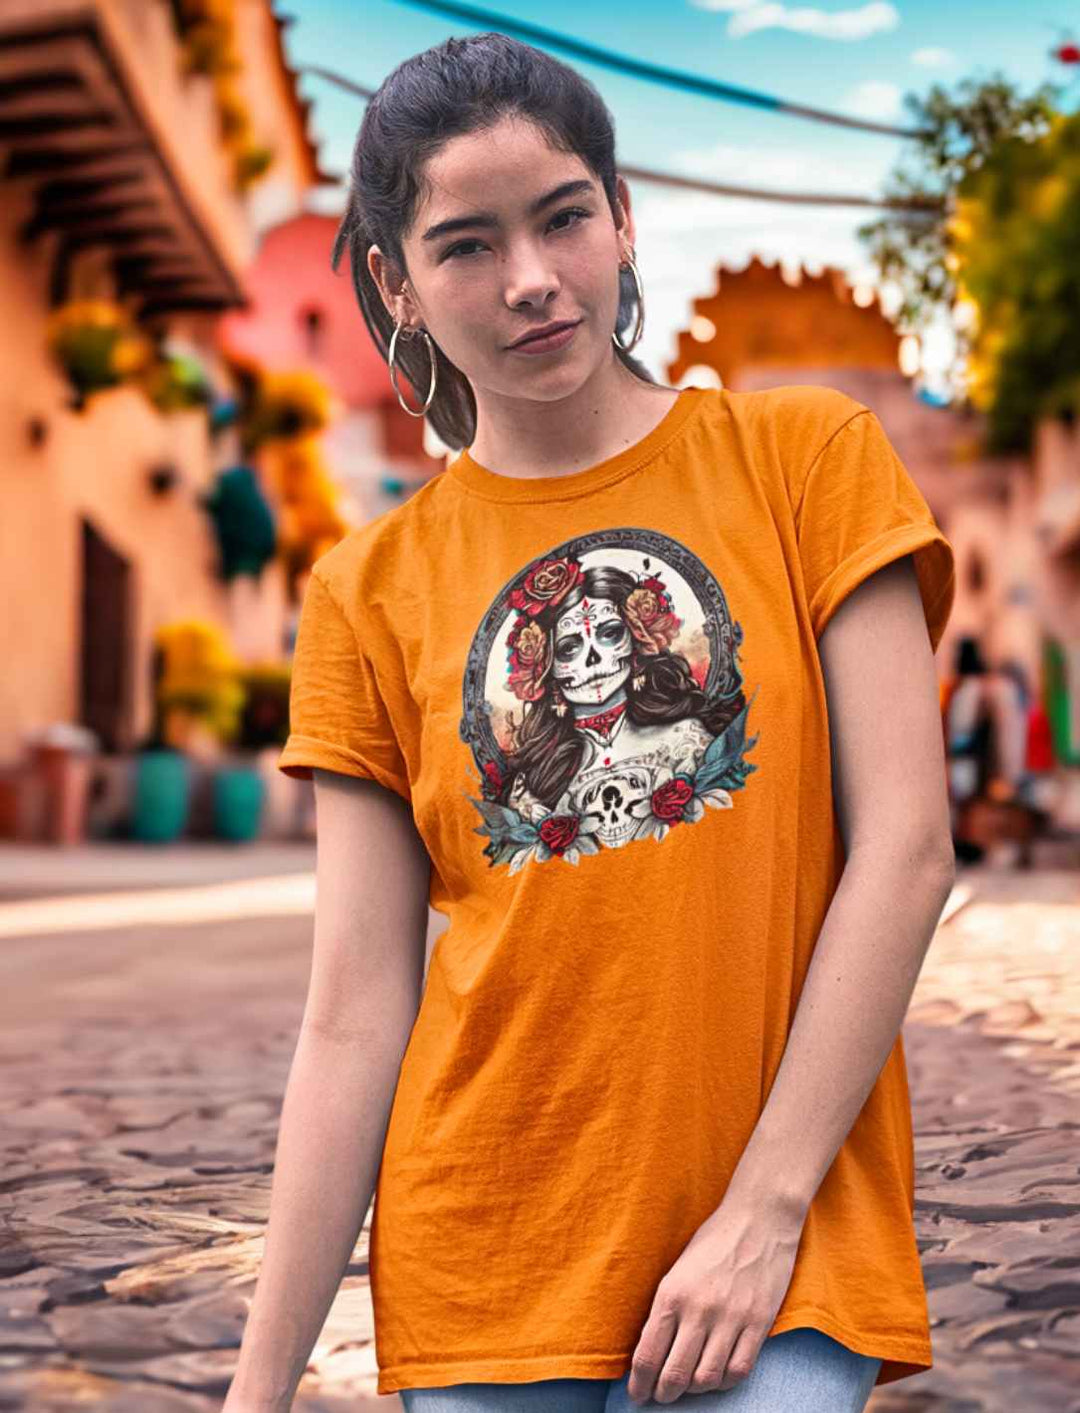 Junge Frau im Orange Unisex La Catrina Shirt, stehend auf einer pittoresken mexikanischen Straße am Dia de los Muertos – Runental.de.